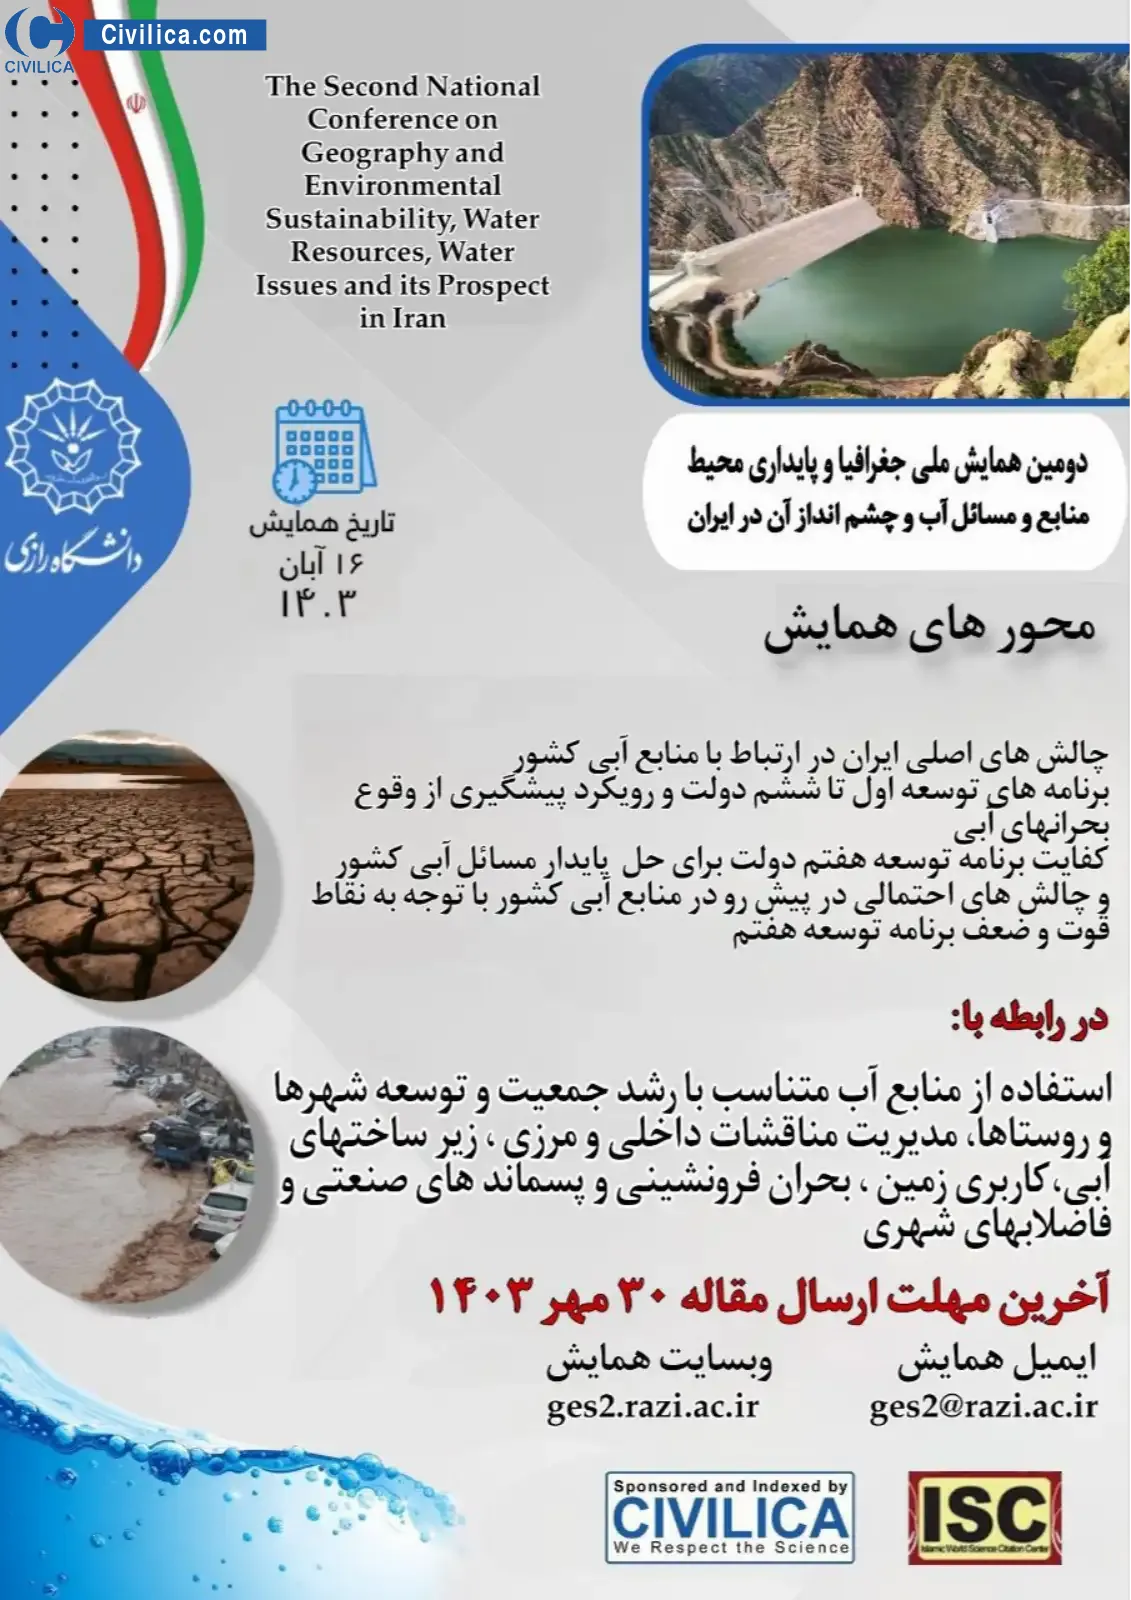 فراخوان مقاله دومین همایش جغرافیا و پایداری محیط(منابع و مسائل آب و چالش های آن در ایران)